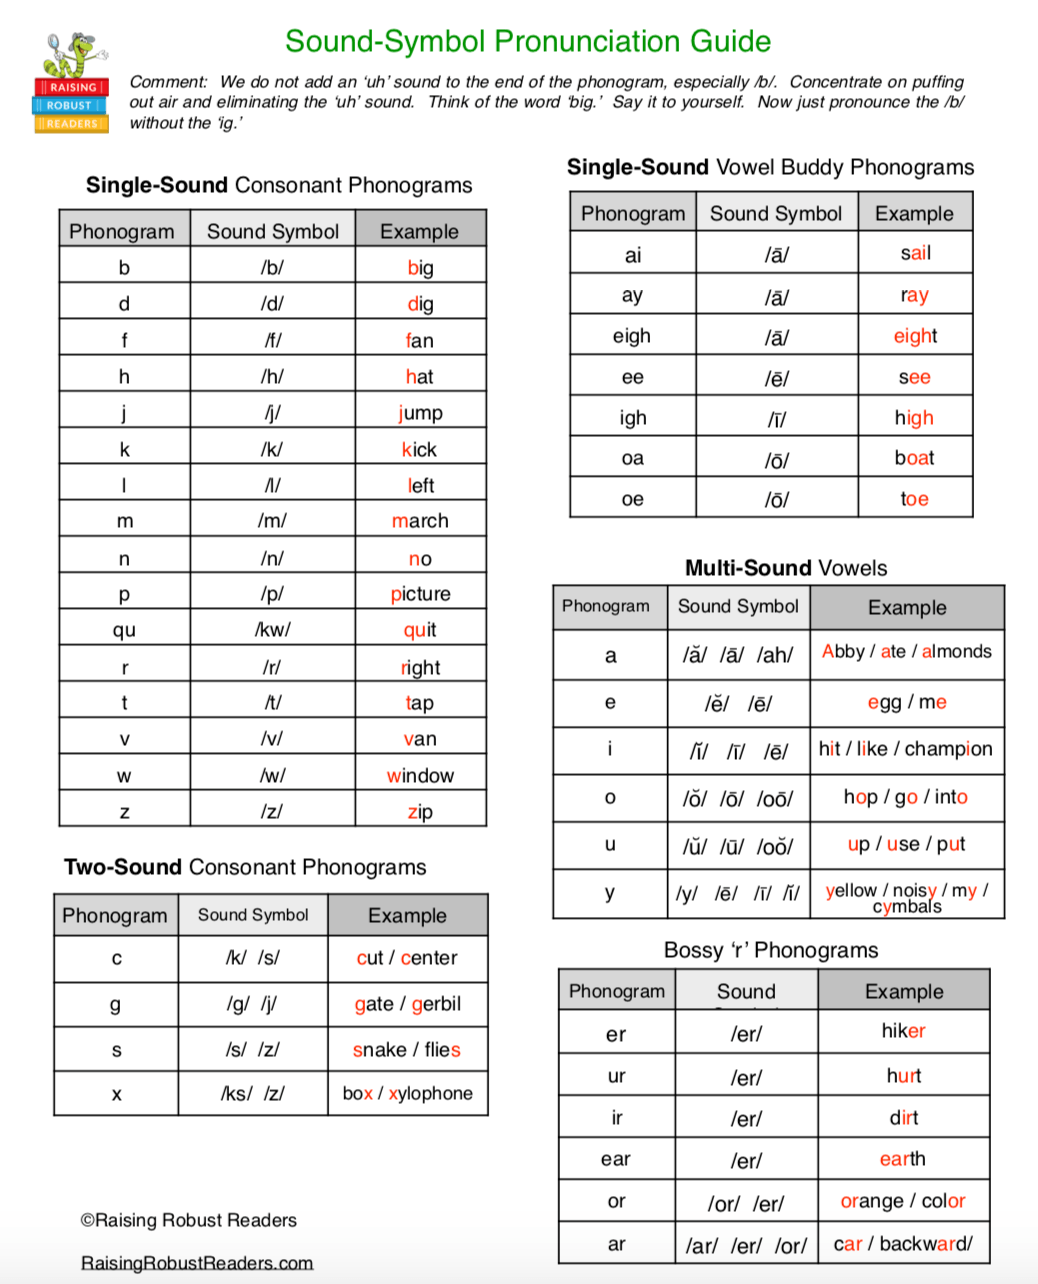 Alphabet code pronunciation Guide